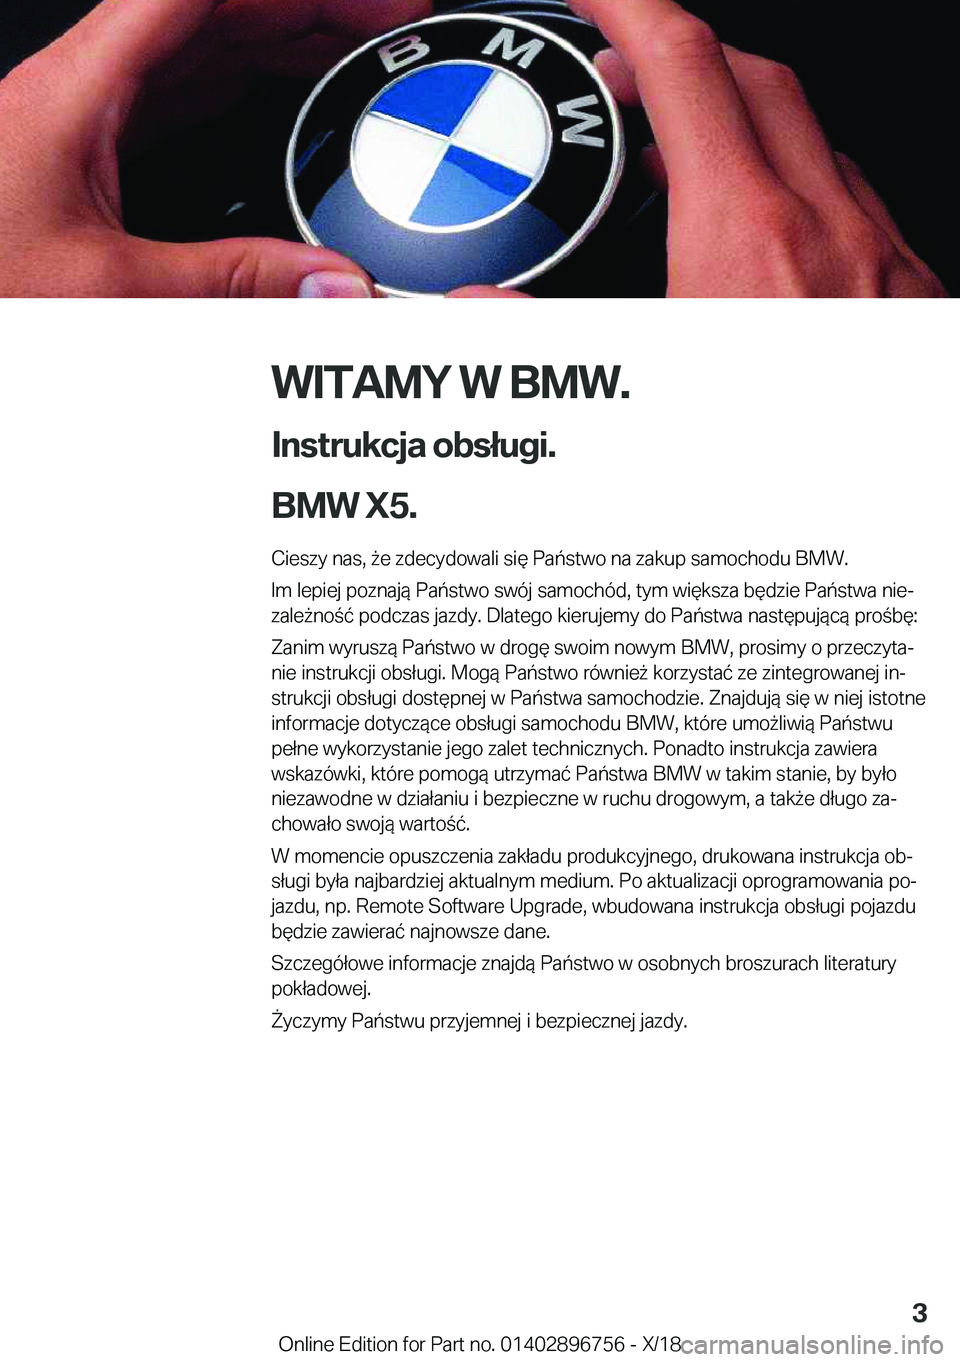 BMW X5 2019  Instrukcja obsługi (in Polish) �W�I�T�A�M�Y��W��B�M�W�.
�I�n�s�t�r�u�k�c�j�a��o�b�s�ł�u�g�i�.
�B�M�W��X�5�. �C�i�e�s�z�y��n�a�s�,�9�e��z�d�e�c�y�d�o�w�a�l�i��s�i�